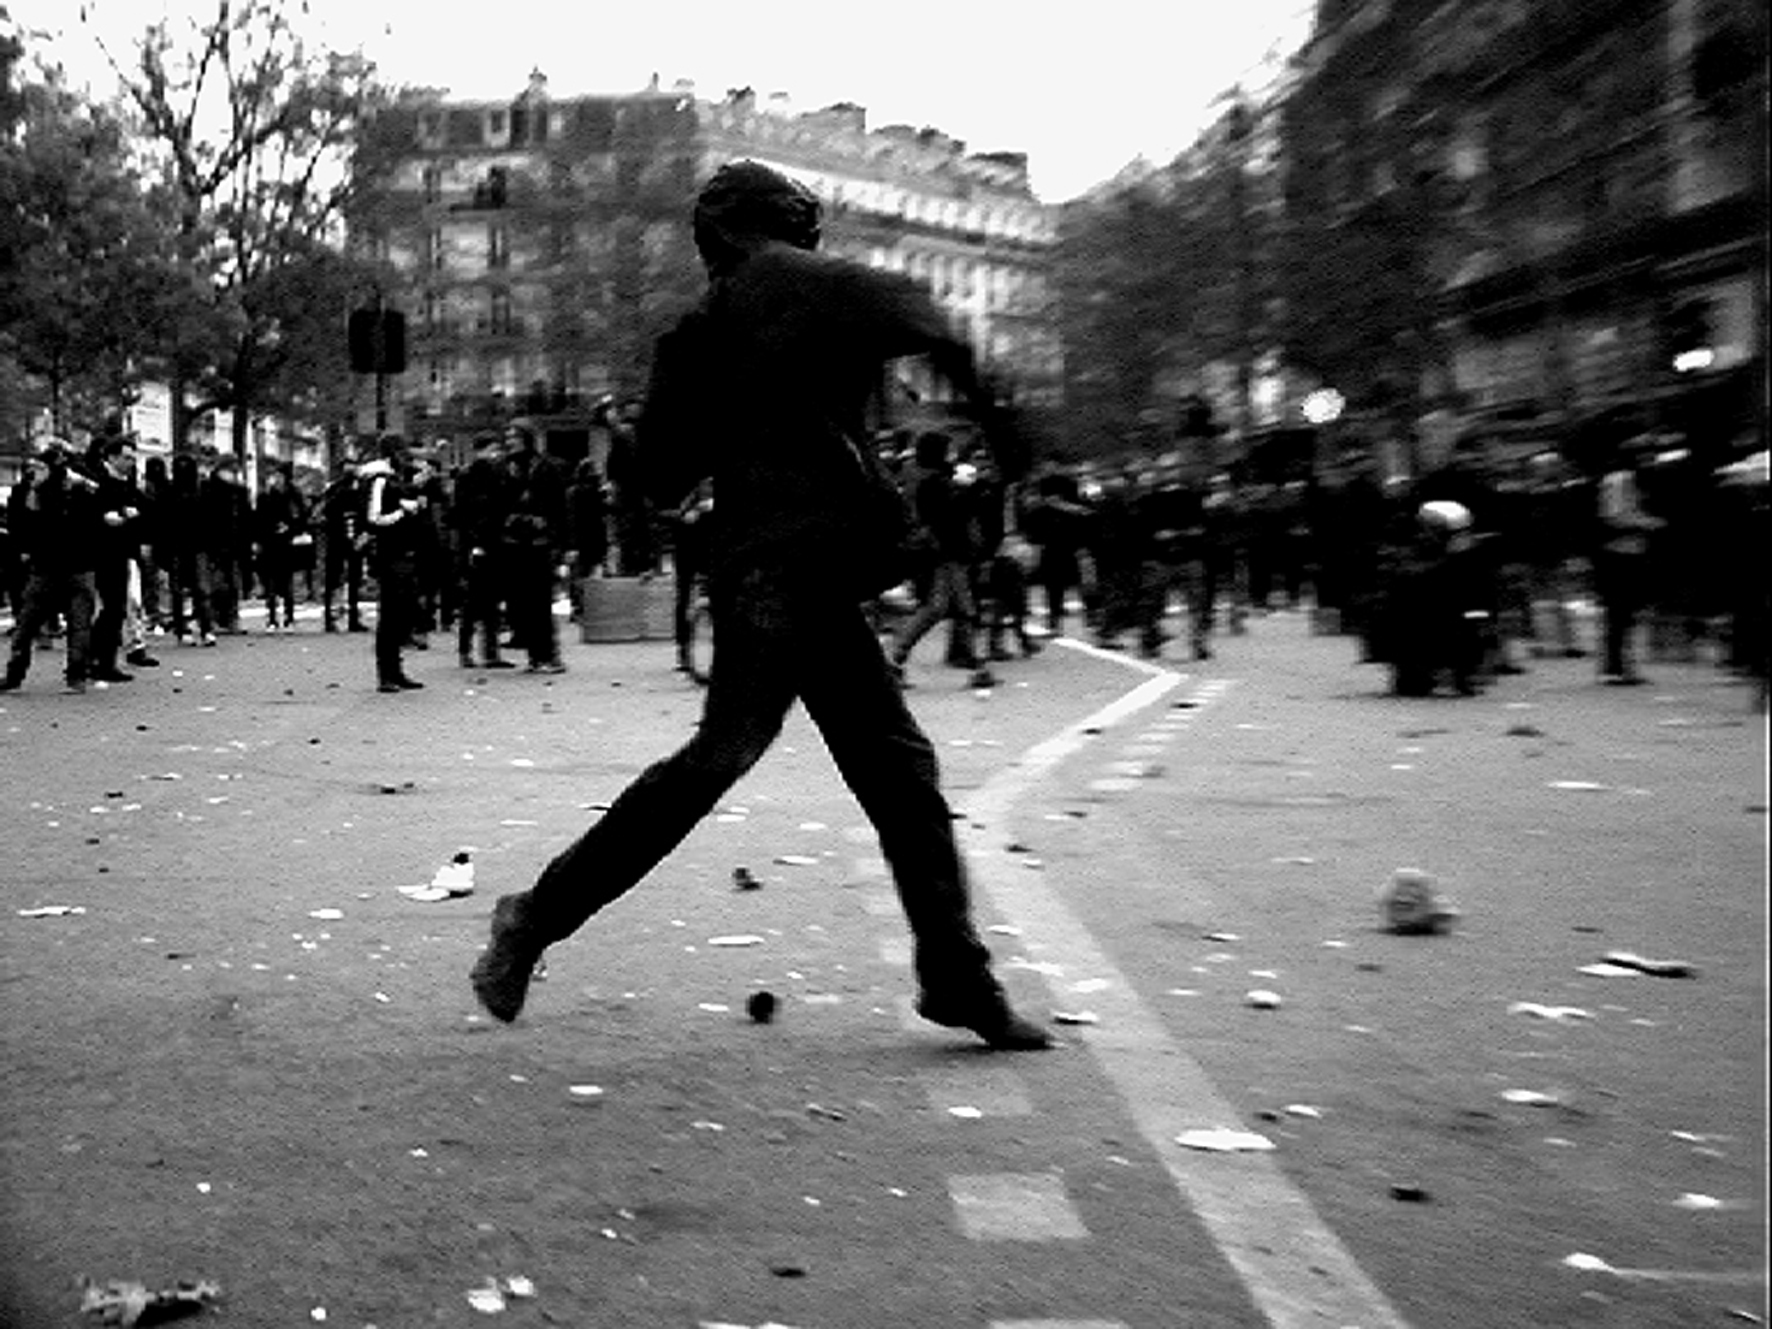 Cena do filme Paris é uma Festa - Um filme em 18 Ondas. A fotografia em preto e branco é um pouco tremida,  e retrata um momento de ação de um manifestante em posição para atirar algo em um protesto nas ruas de Paris. O chão está sujo e, ao fundo, podemos visualizar diversas pessoas pelo centro da cidade. 